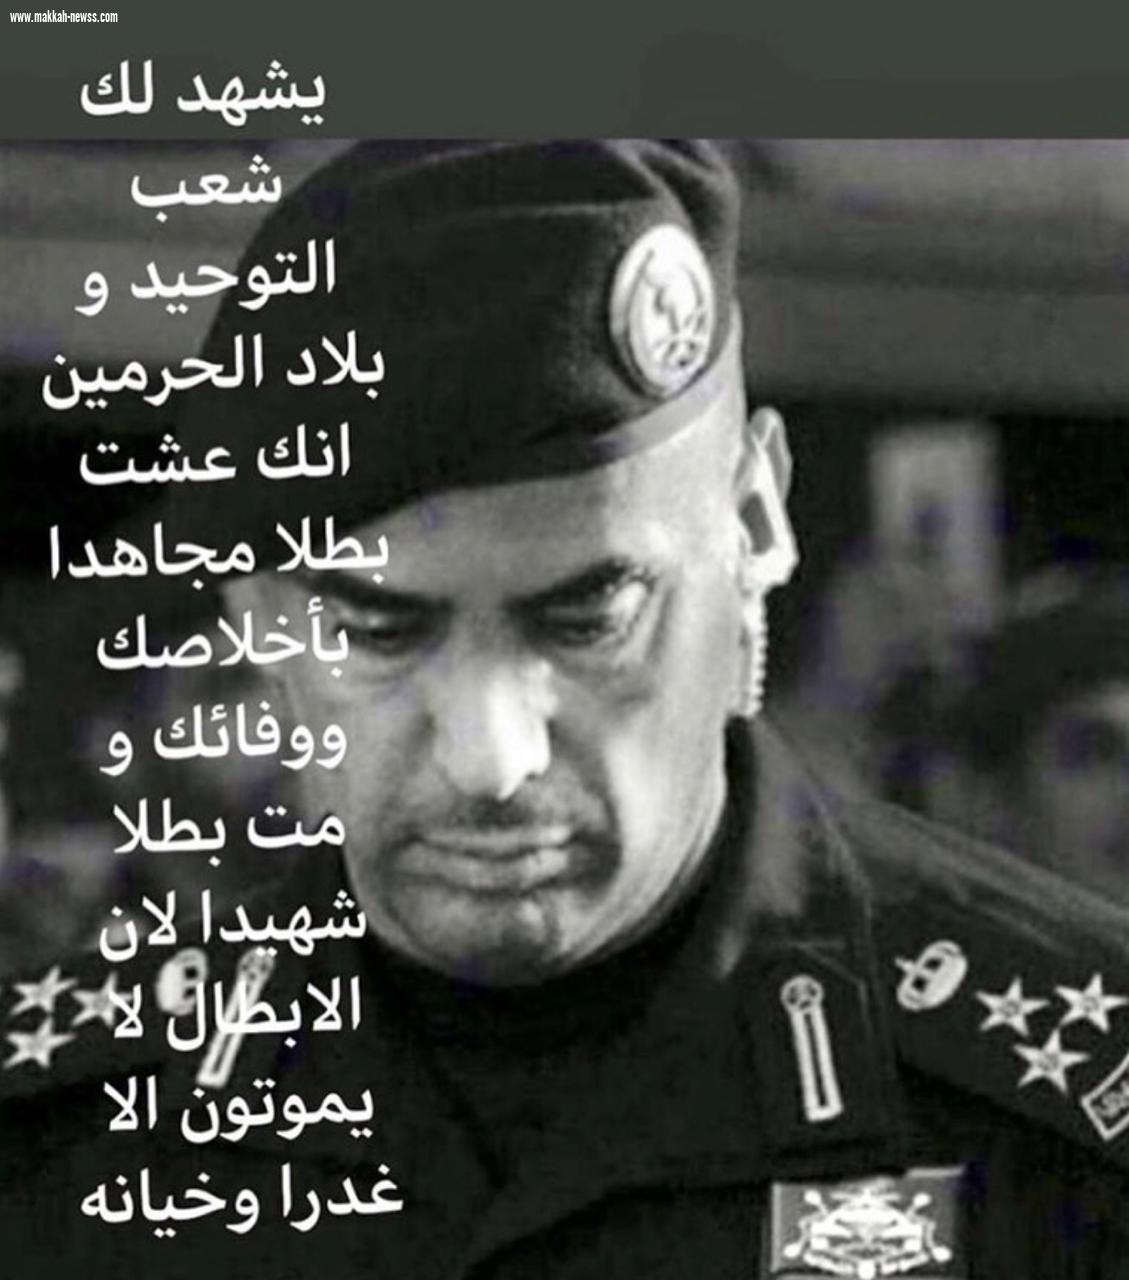 وفاة اللواء عبدالعزيز الفغم الحارس الشخصي لخادم الحرمين الشريفين صحيفة صوت مكة الاجتماعية